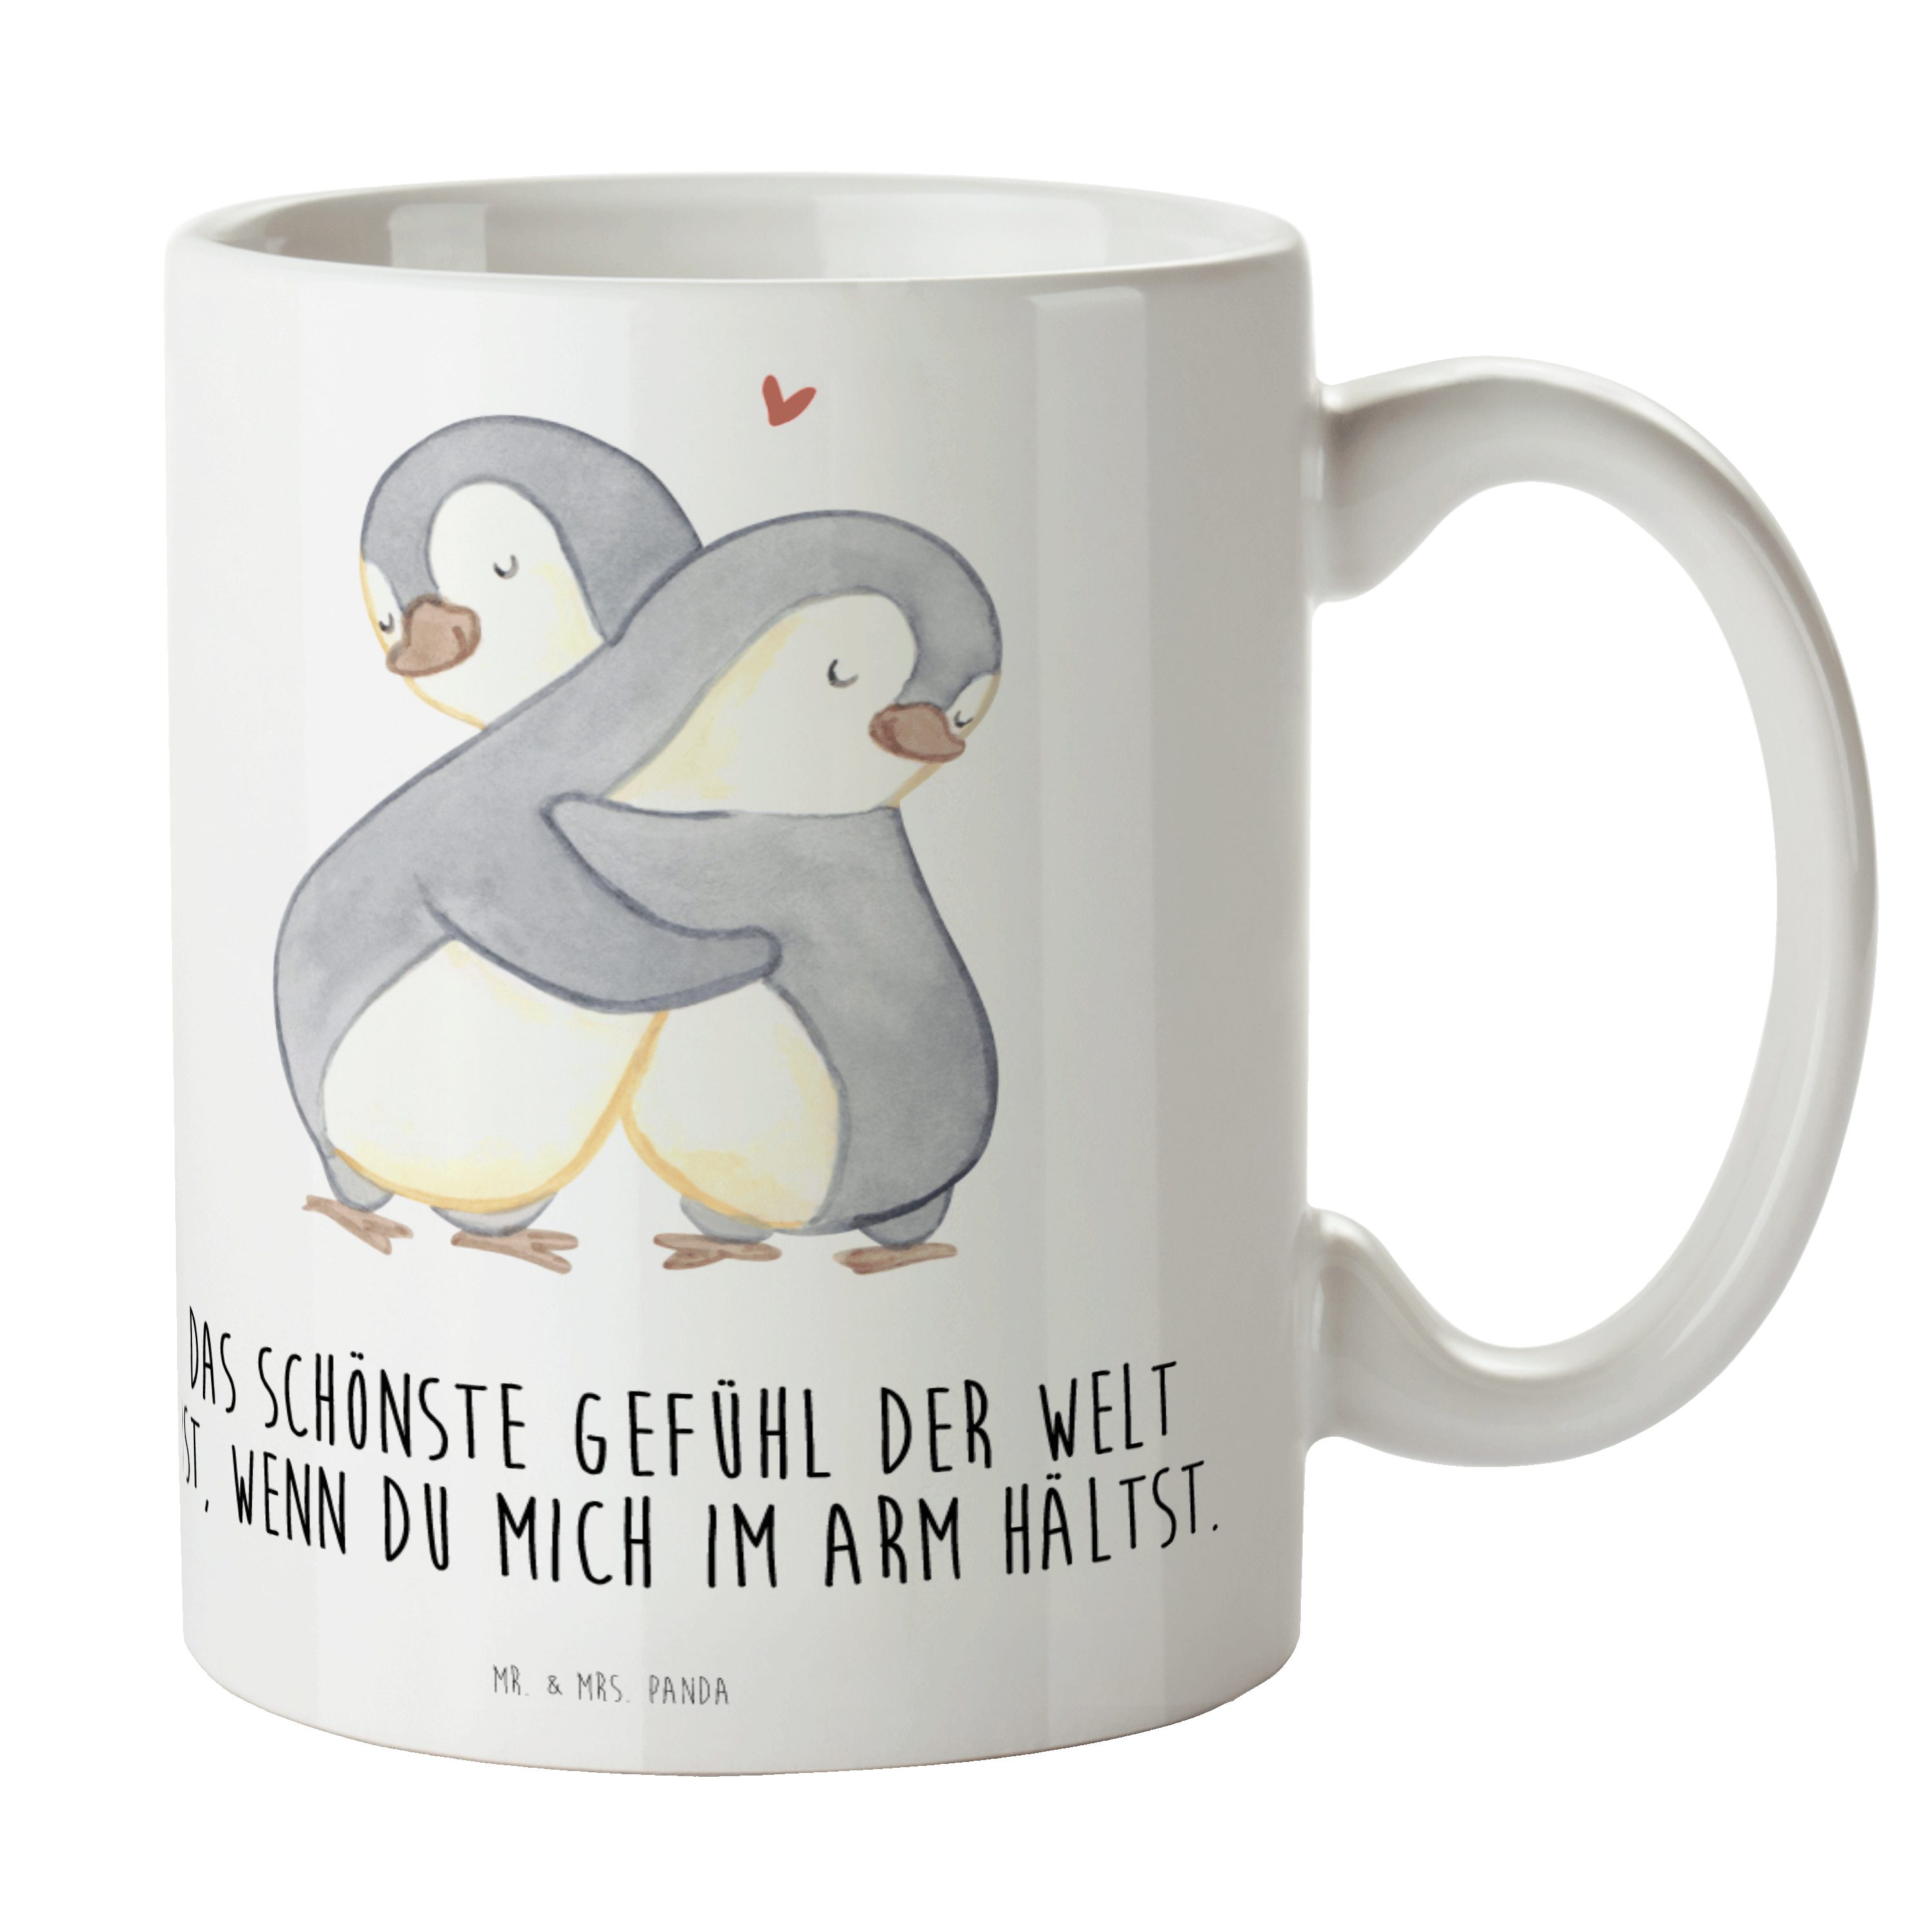 Mr. & Mrs. Panda Tasse Pinguine Kuscheln - Weiß - Geschenk, Kaffeebecher, Hochzeitstag, für, Keramik, Einzigartiges Botschaft